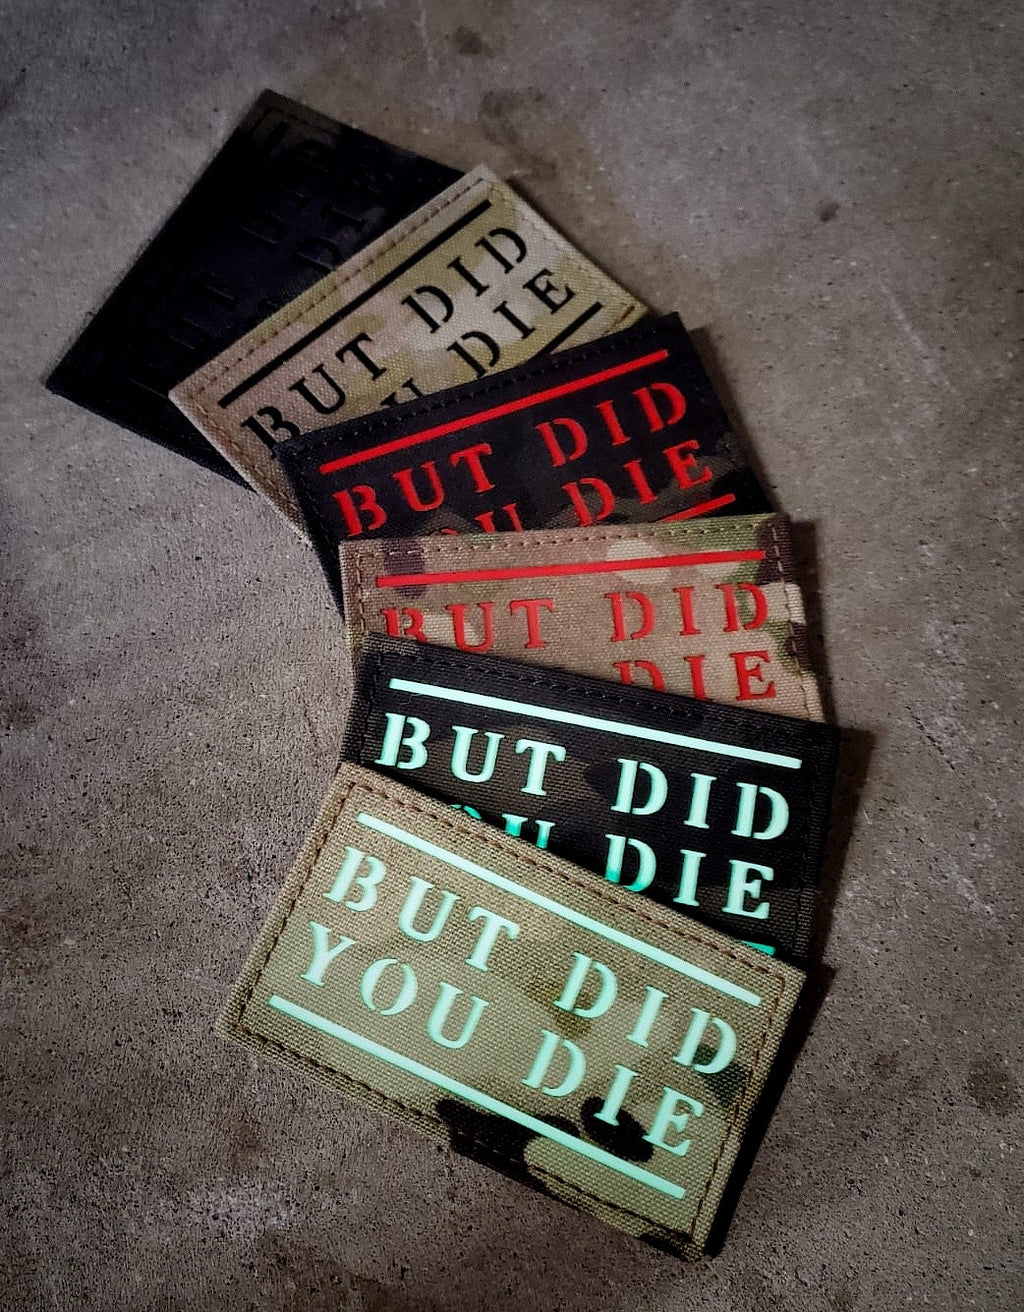 “But did you die”